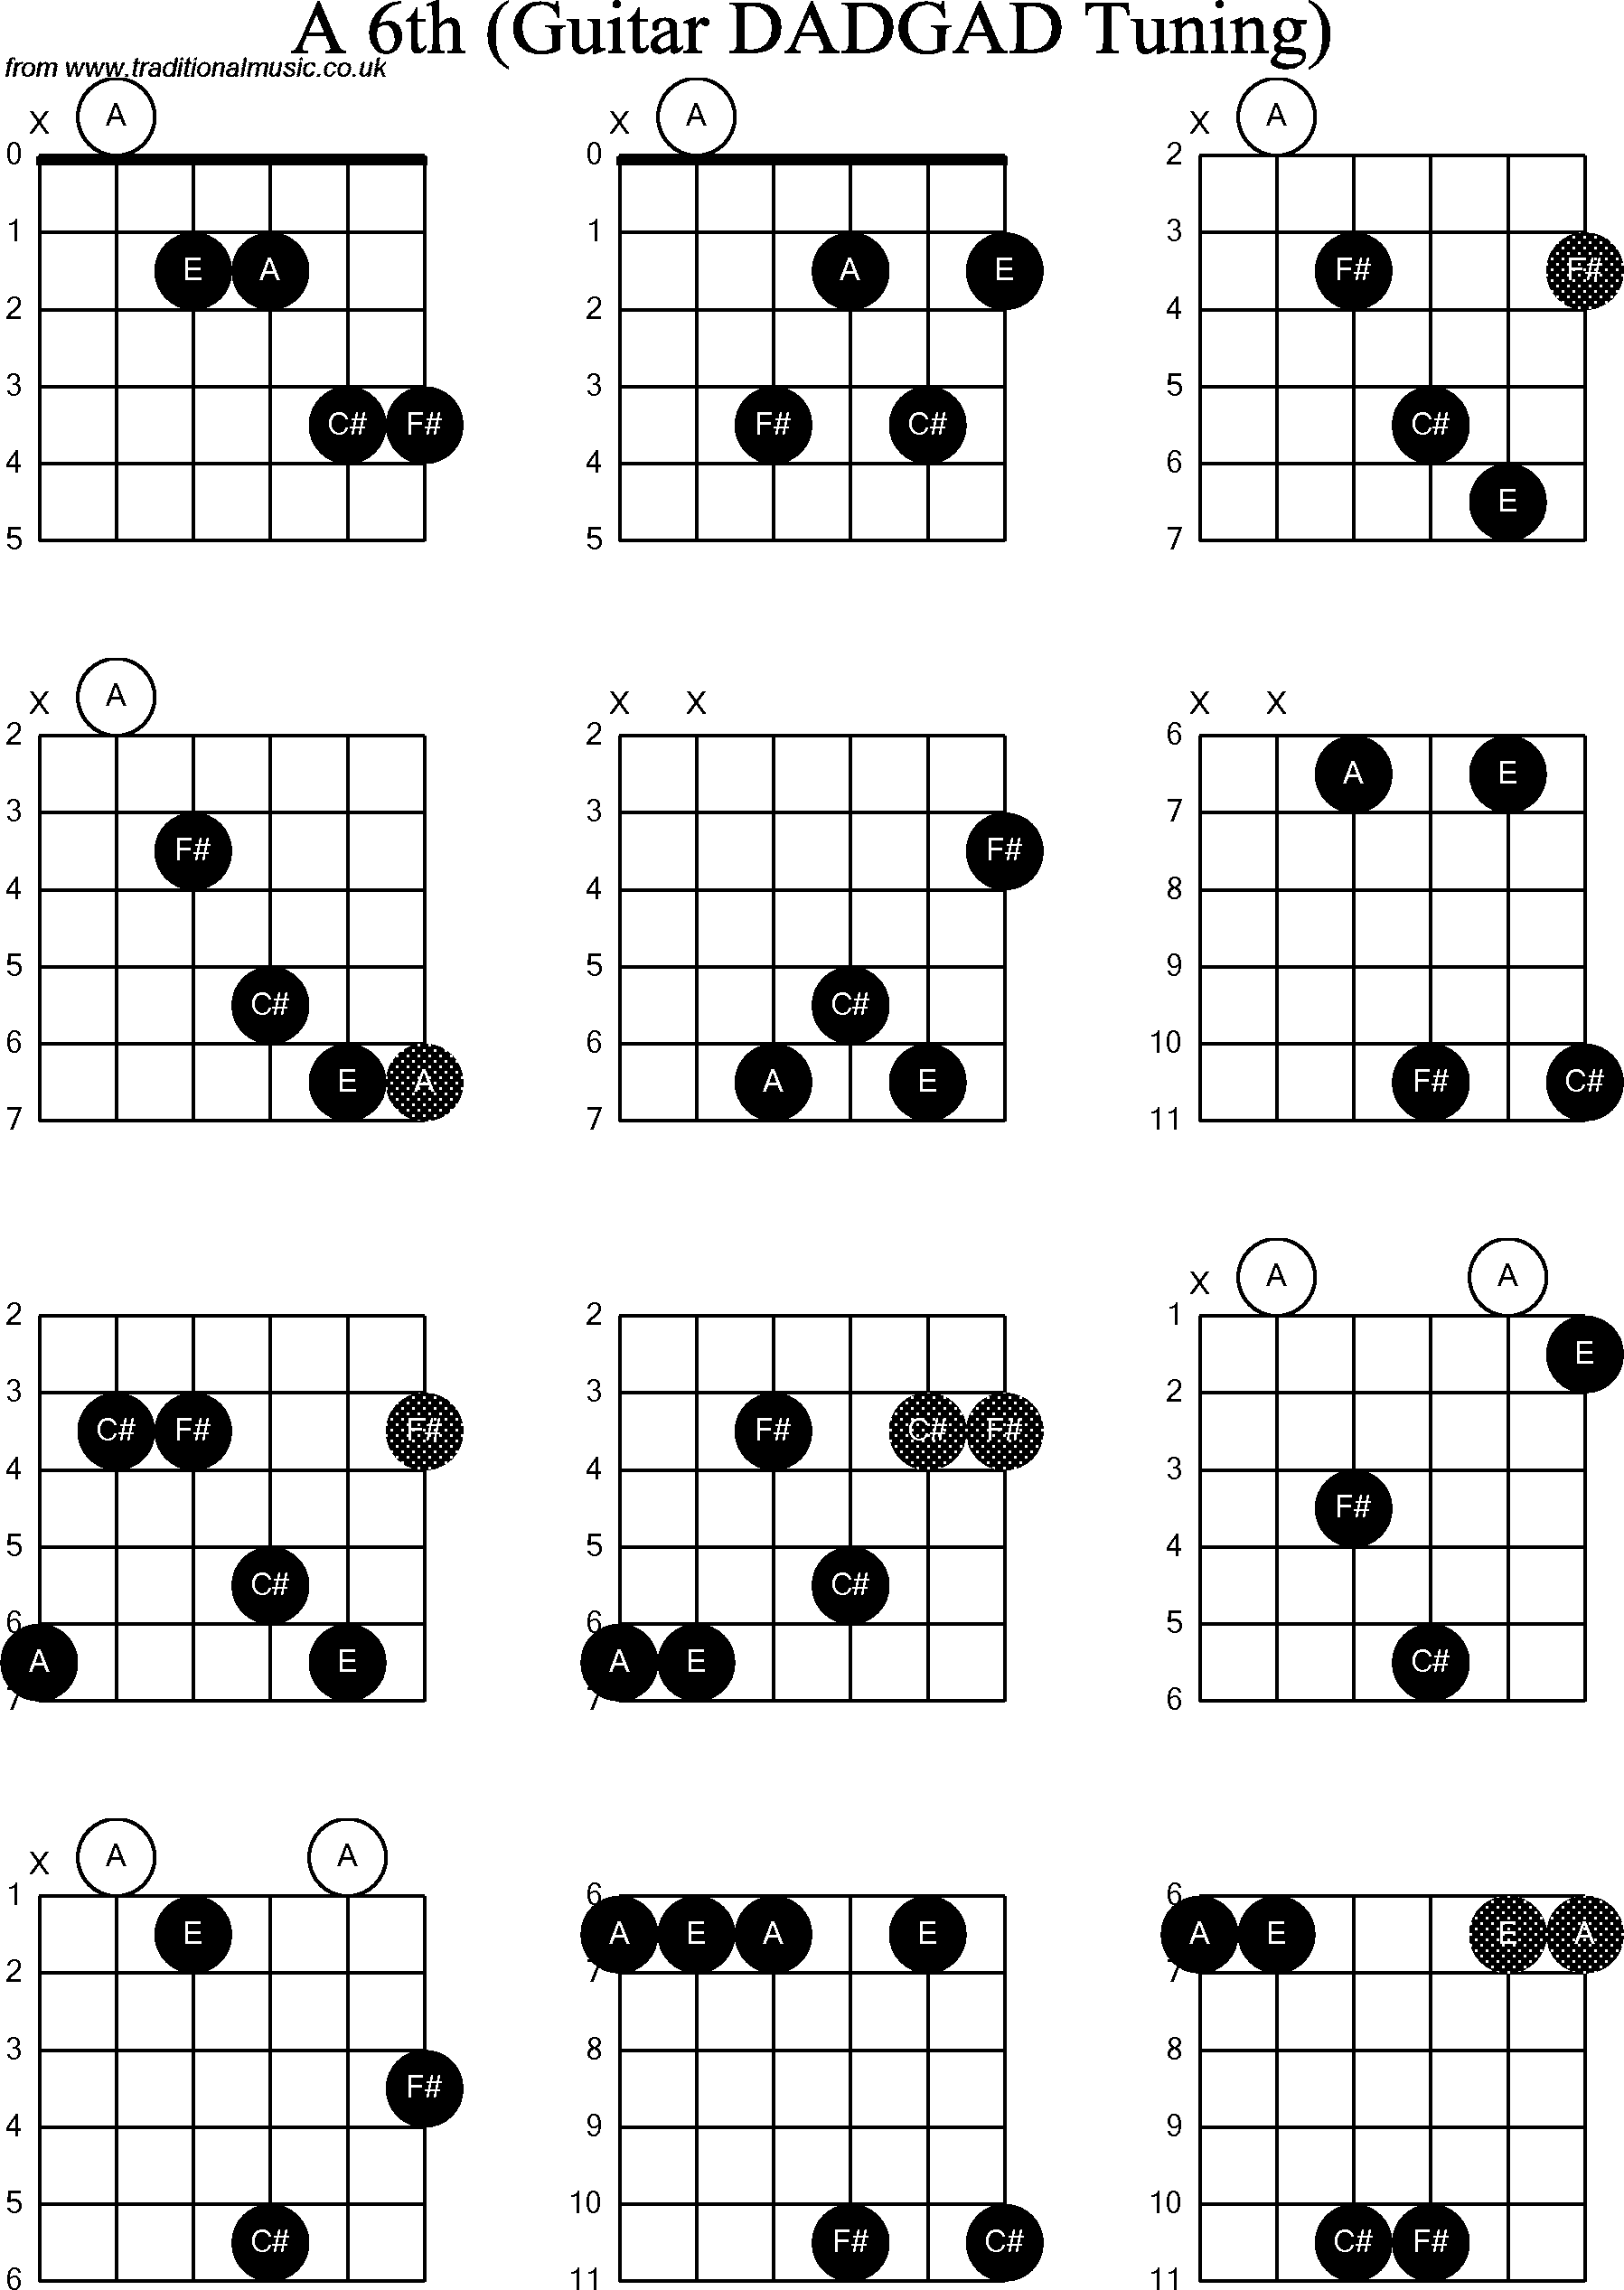 Chord Diagrams for D Modal Guitar(DADGAD), A6th